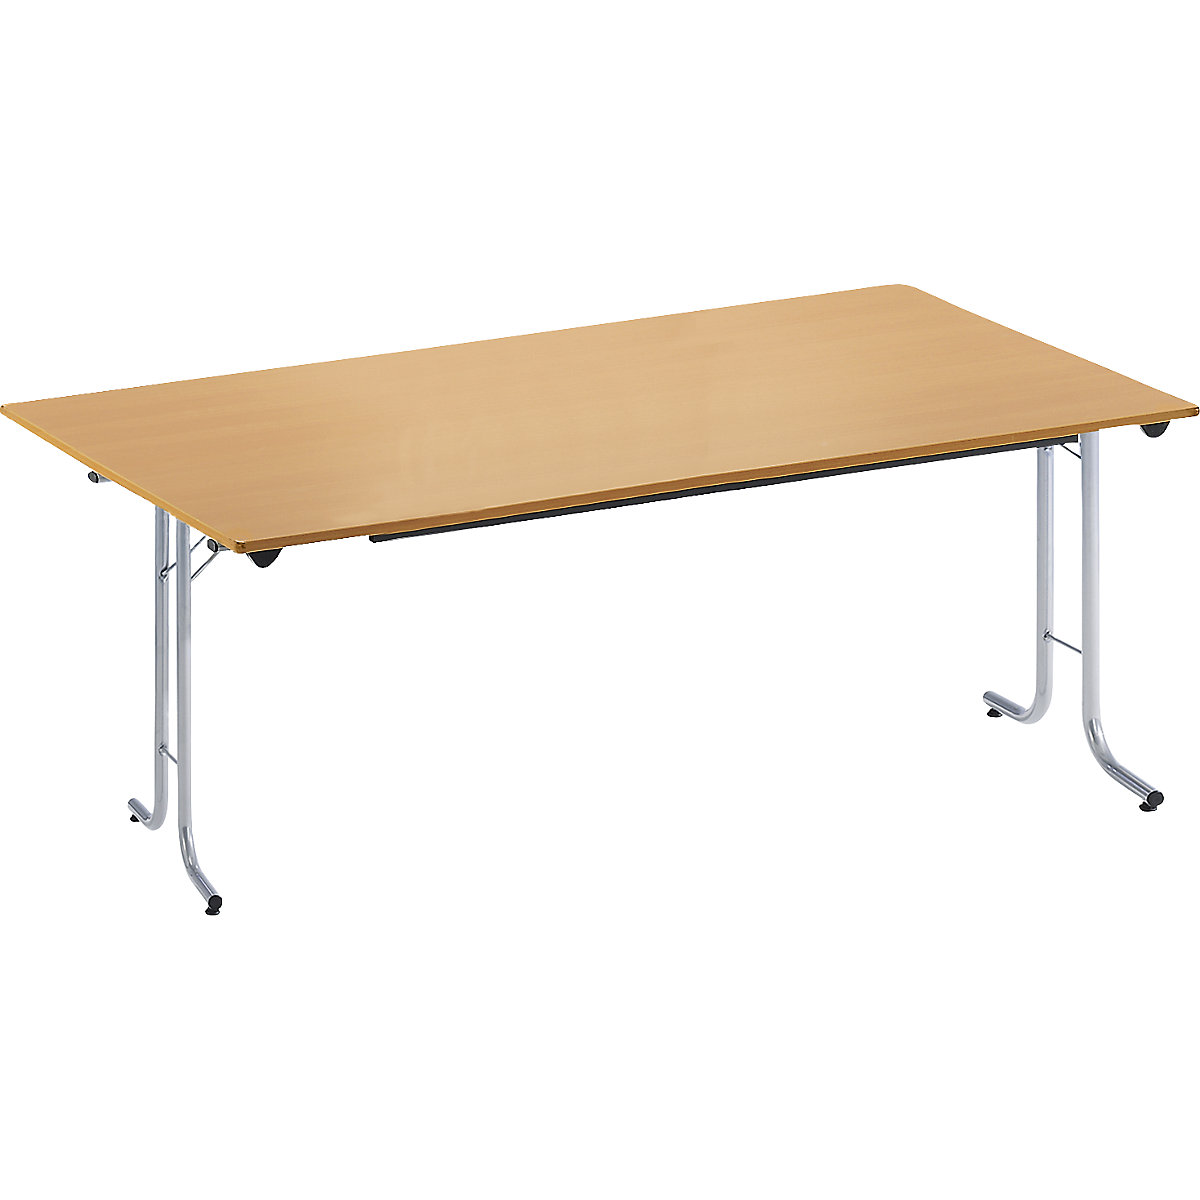 Sklápací stôl, so zaoblenými hranami, podstavec z kruhovej rúrky, tvar dosky obdĺžnikový, 1600 x 800 mm, podstavec strieborná, doska vzor buk-6